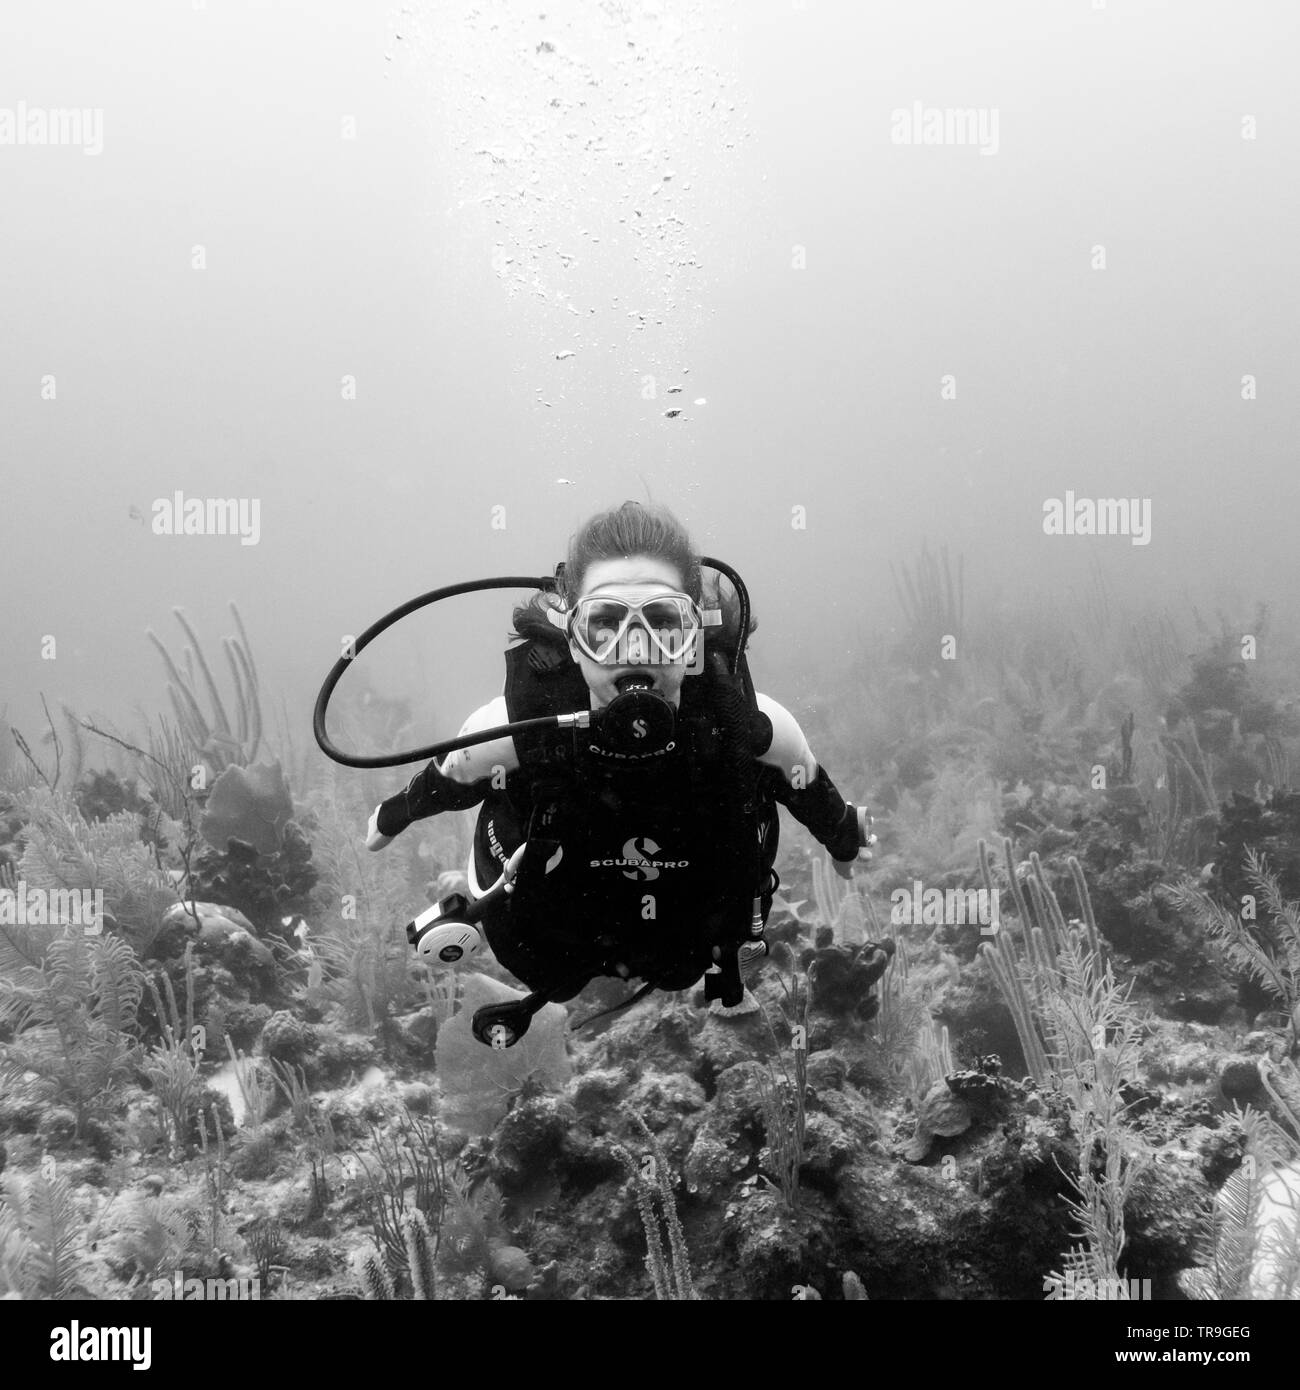 Scuba diver underwater, Joe's Wall, Turneffe Atoll, Belize Barrier Reef, Belize Stock Photo